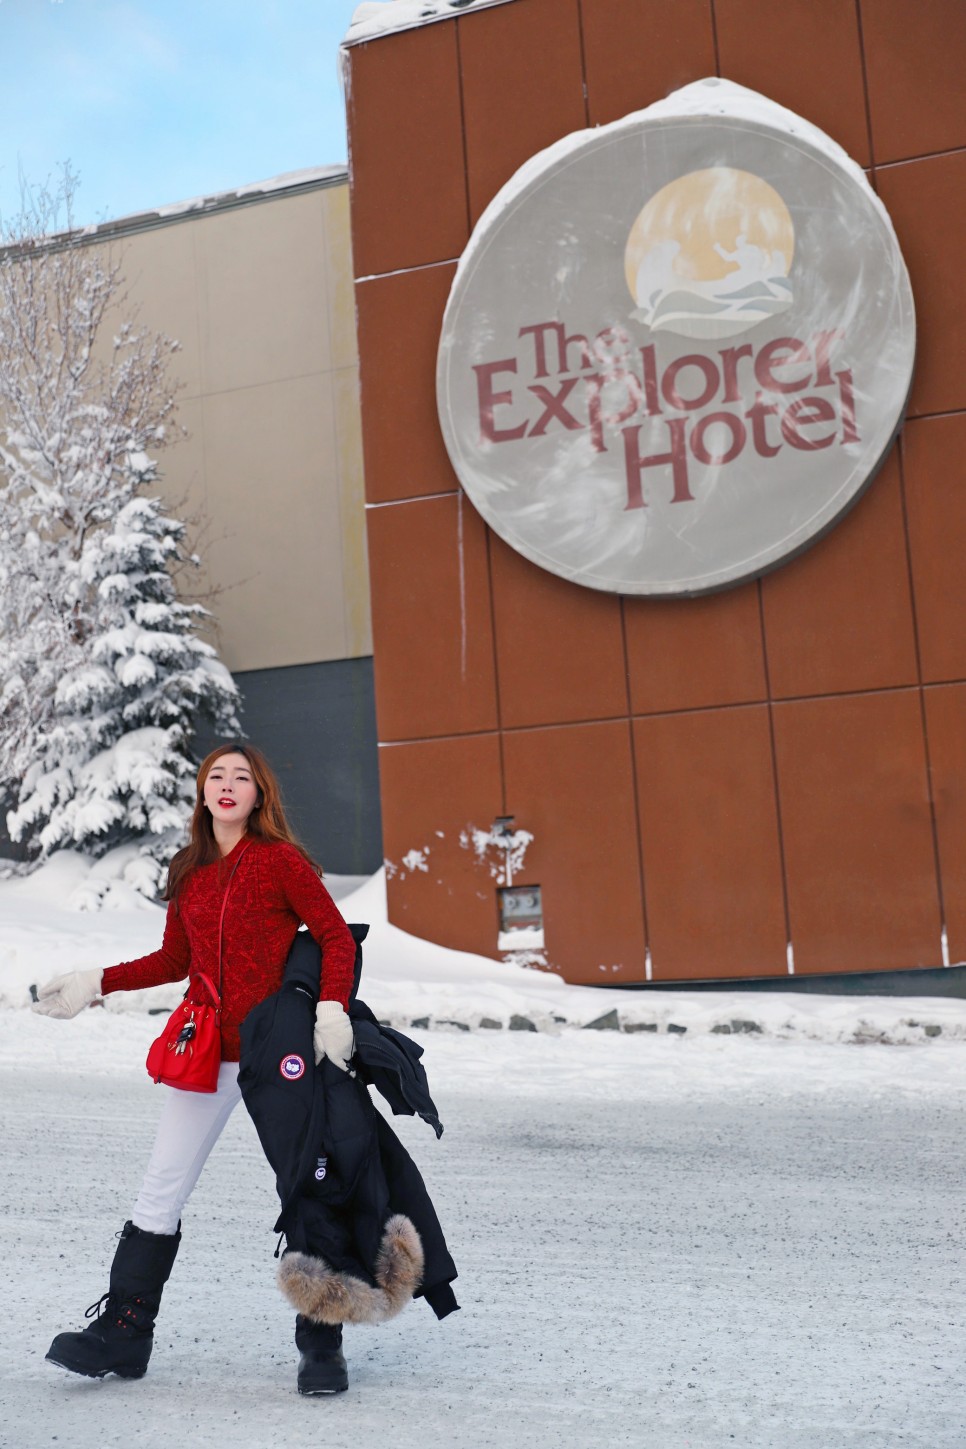 캐나다 여행 오로라 헌팅 + 옐로나이프 익스플로러 호텔